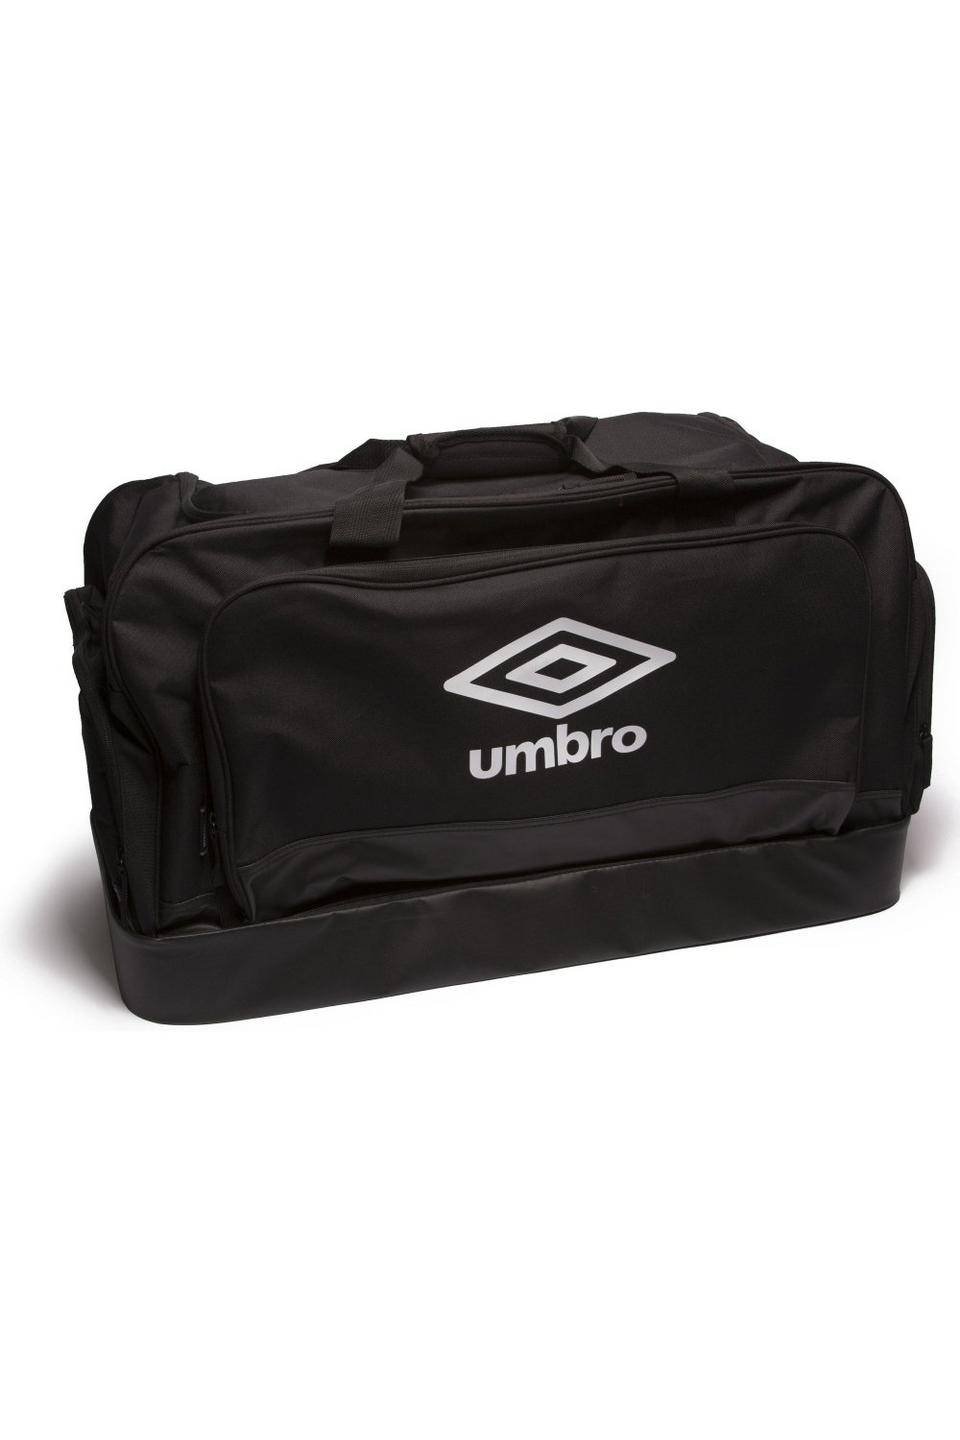 Sports Equipment Umbro Travelling Bag Large Hard Based Holdall Umbro